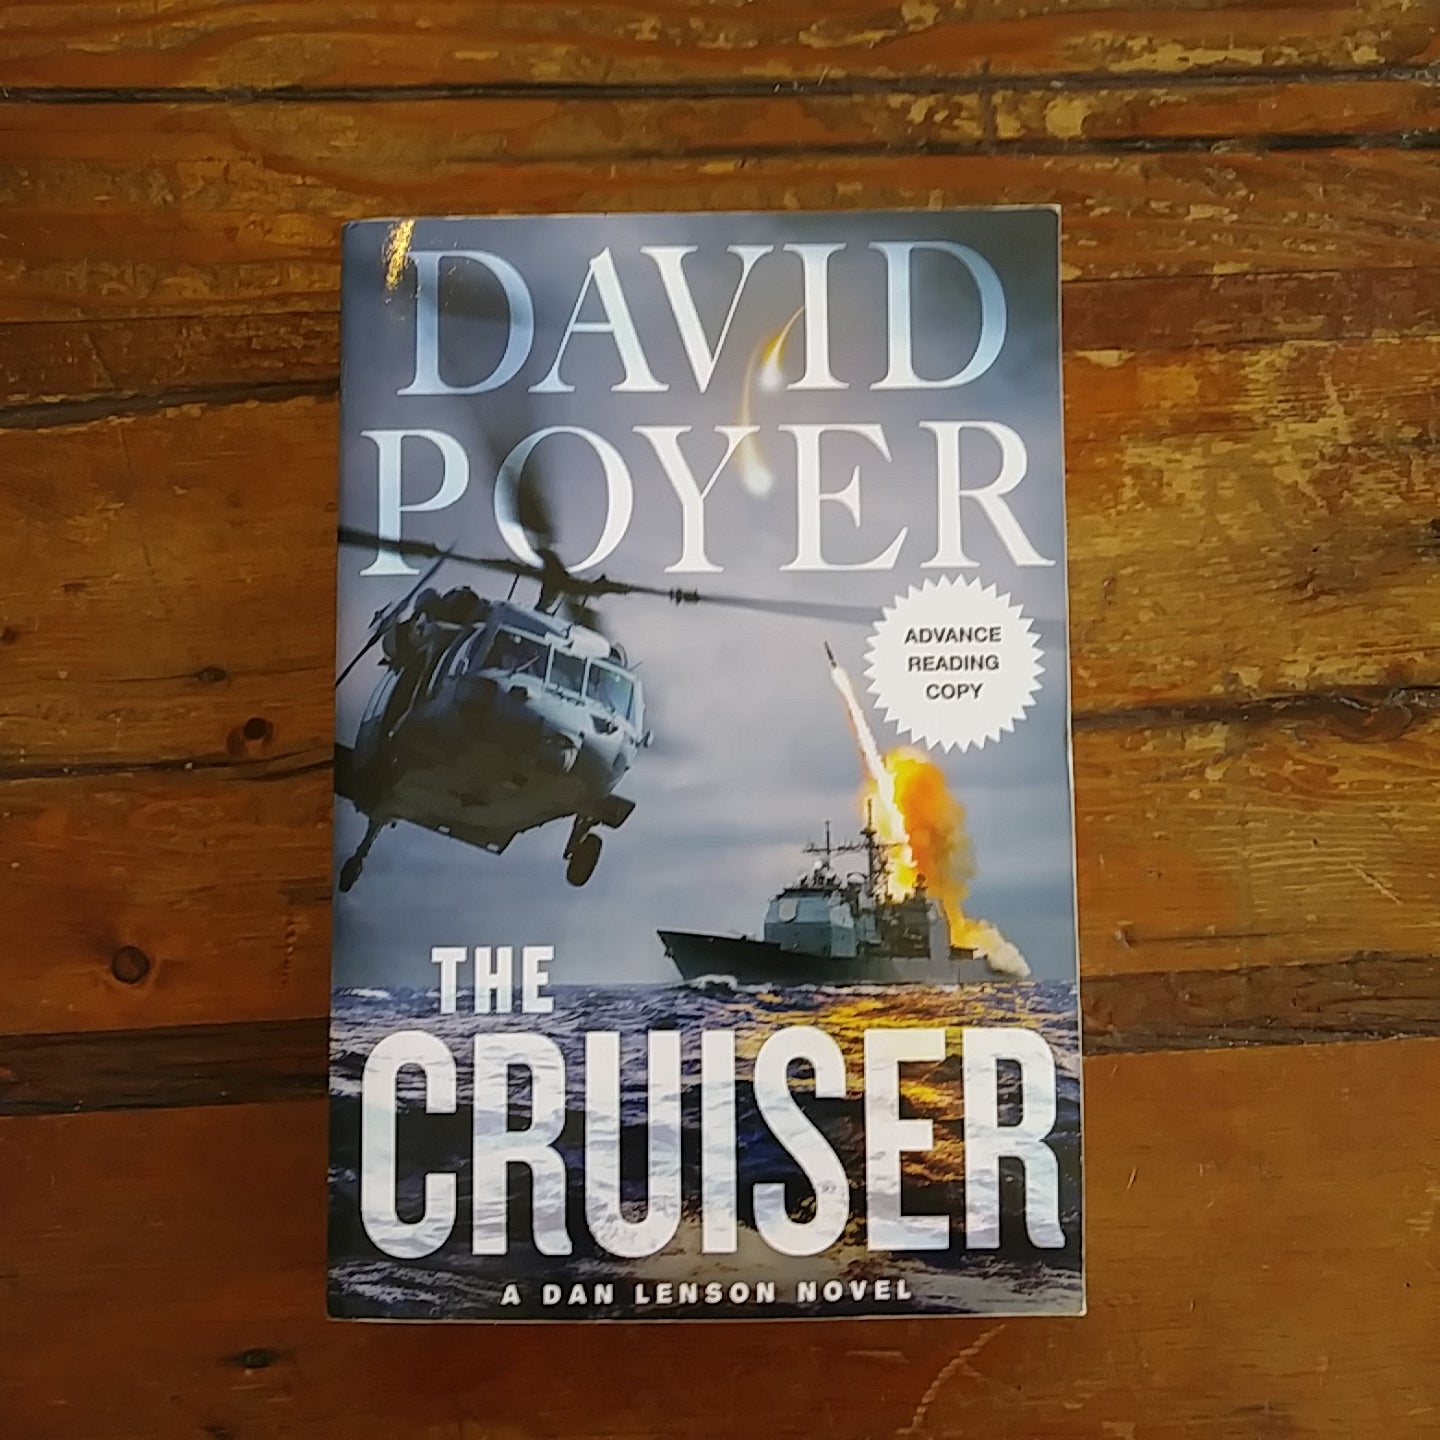 Book, "The Cruiser - A Dan Lenson Novel"